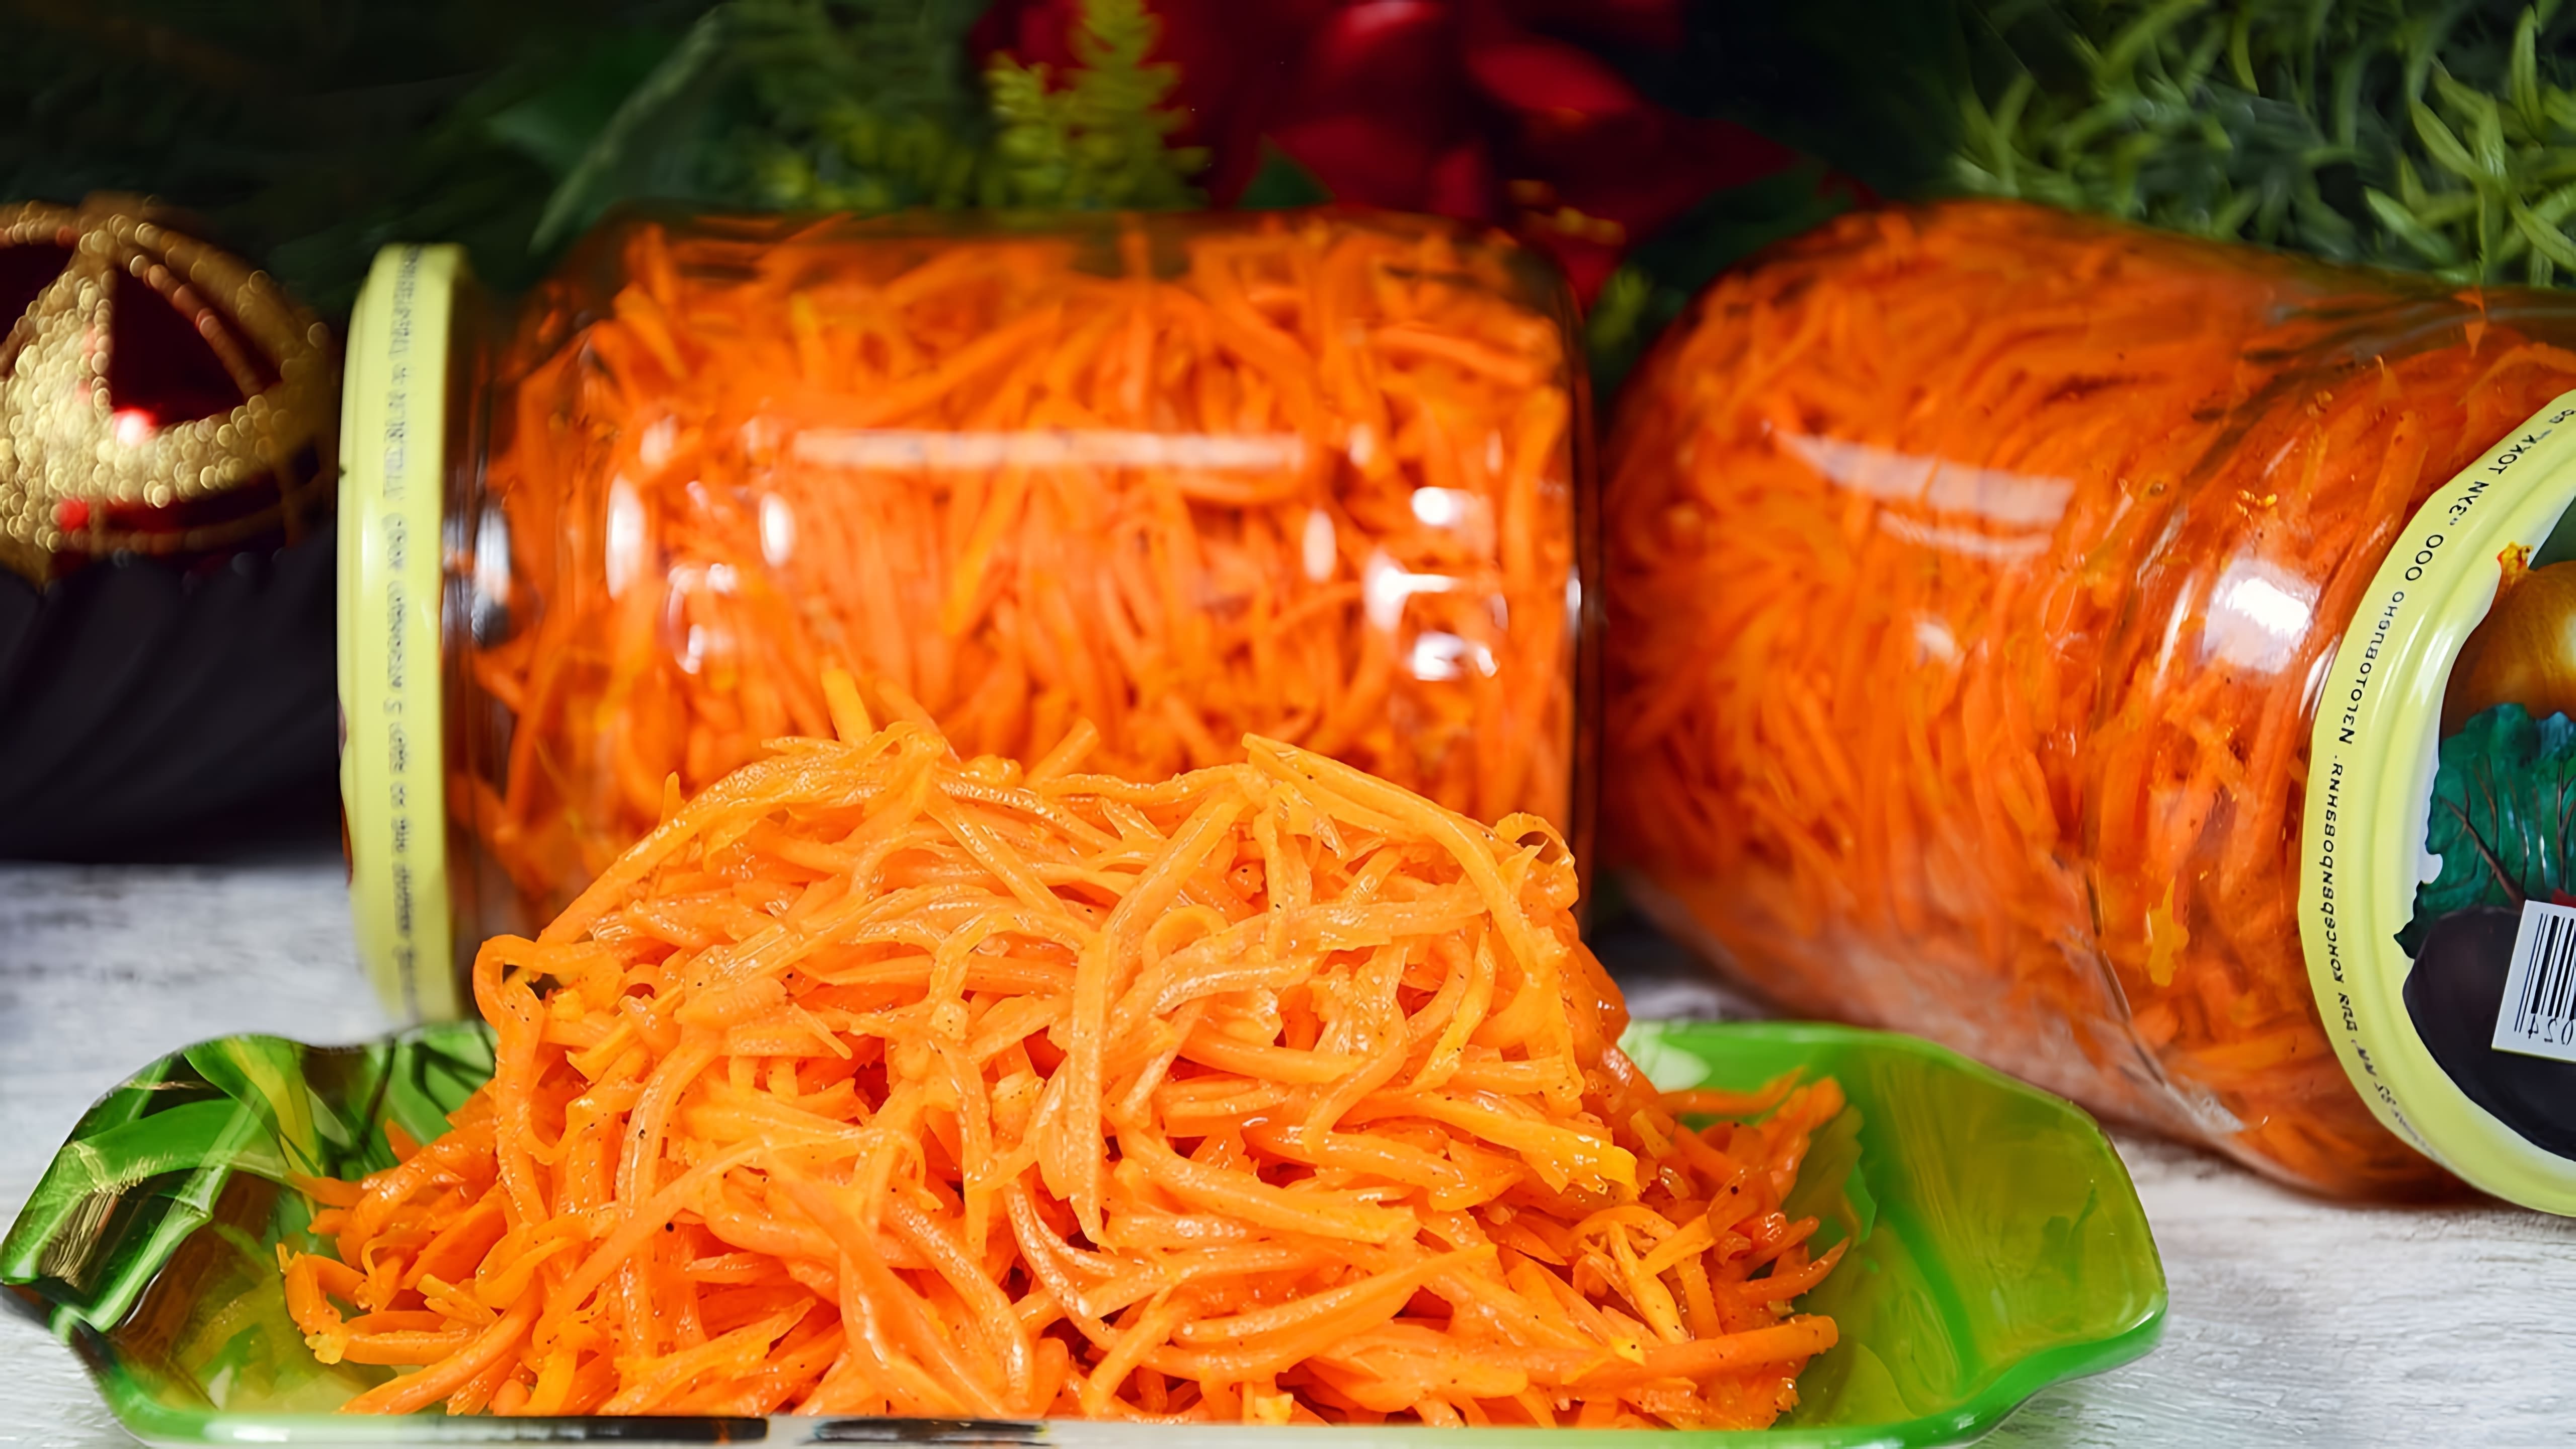 В этом видео демонстрируется рецепт приготовления моркови по-корейски, которая является популярной закуской на праздничном столе